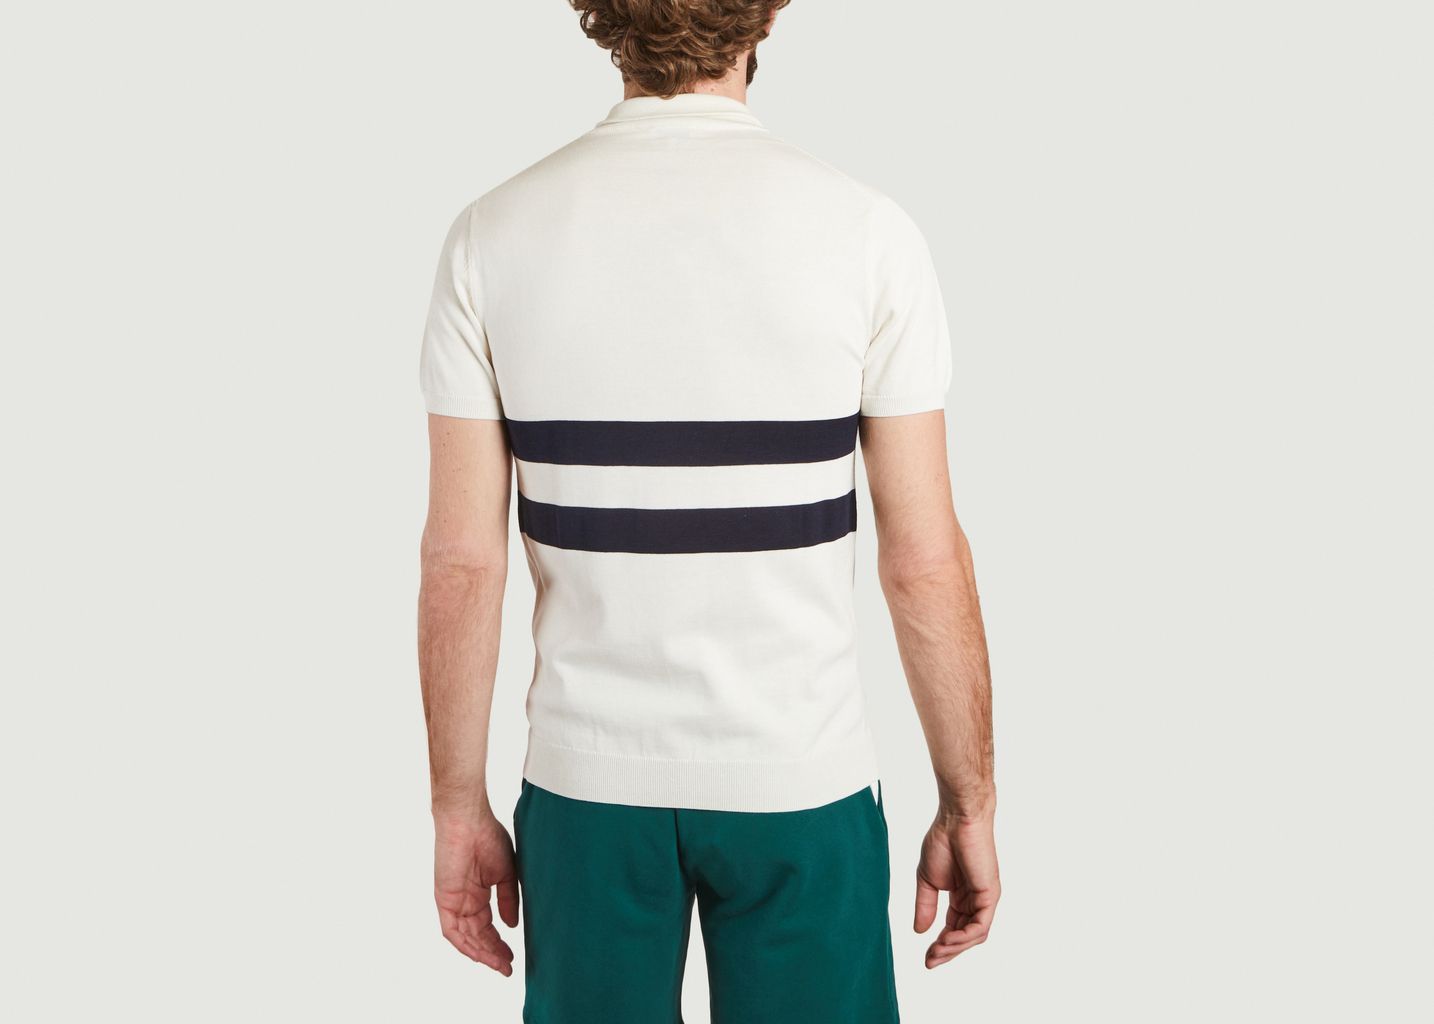 Poloshirt mit Reißverschlusskragen und Streifen Ron Dorff x Rivieras - Ron Dorff